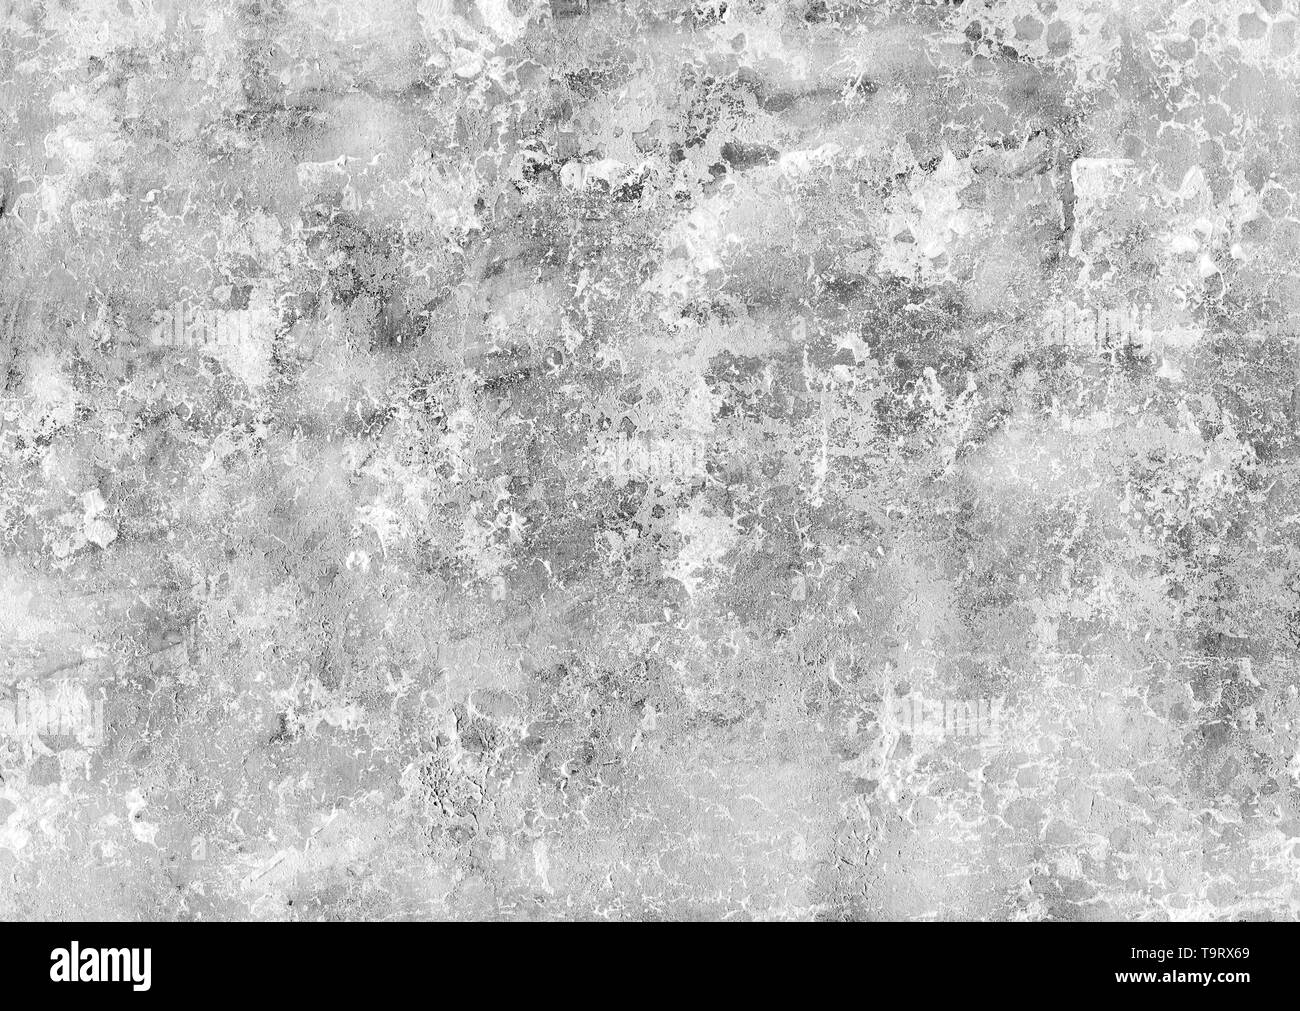 Grunge sfondo astratto. La texture della pietra e del marmo. Texture con graffi, punti e linee. Modello monocromatico. Foto Stock